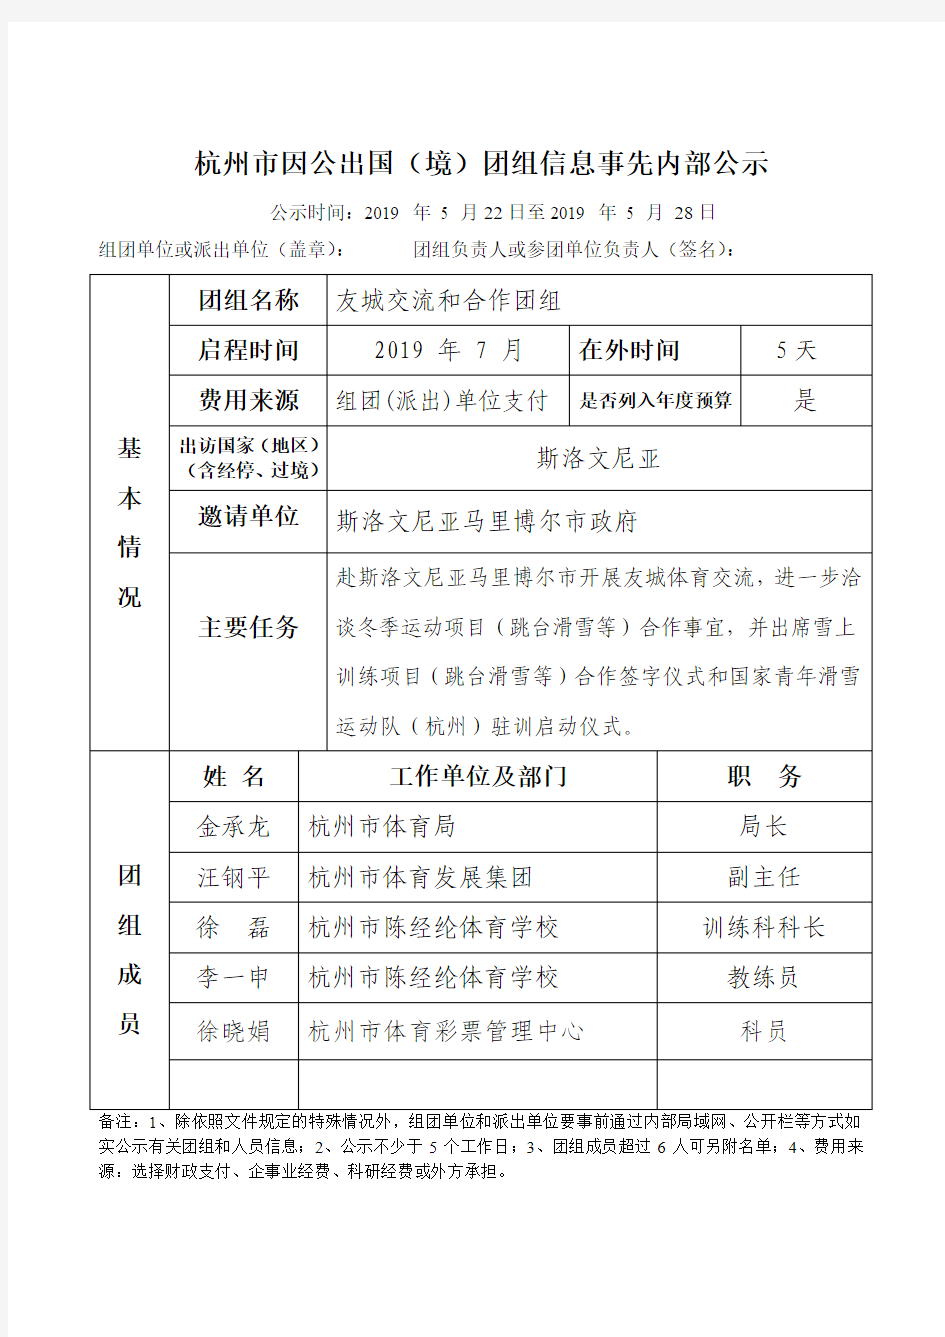 杭州市因公出国(境)团组信息事先内部公示